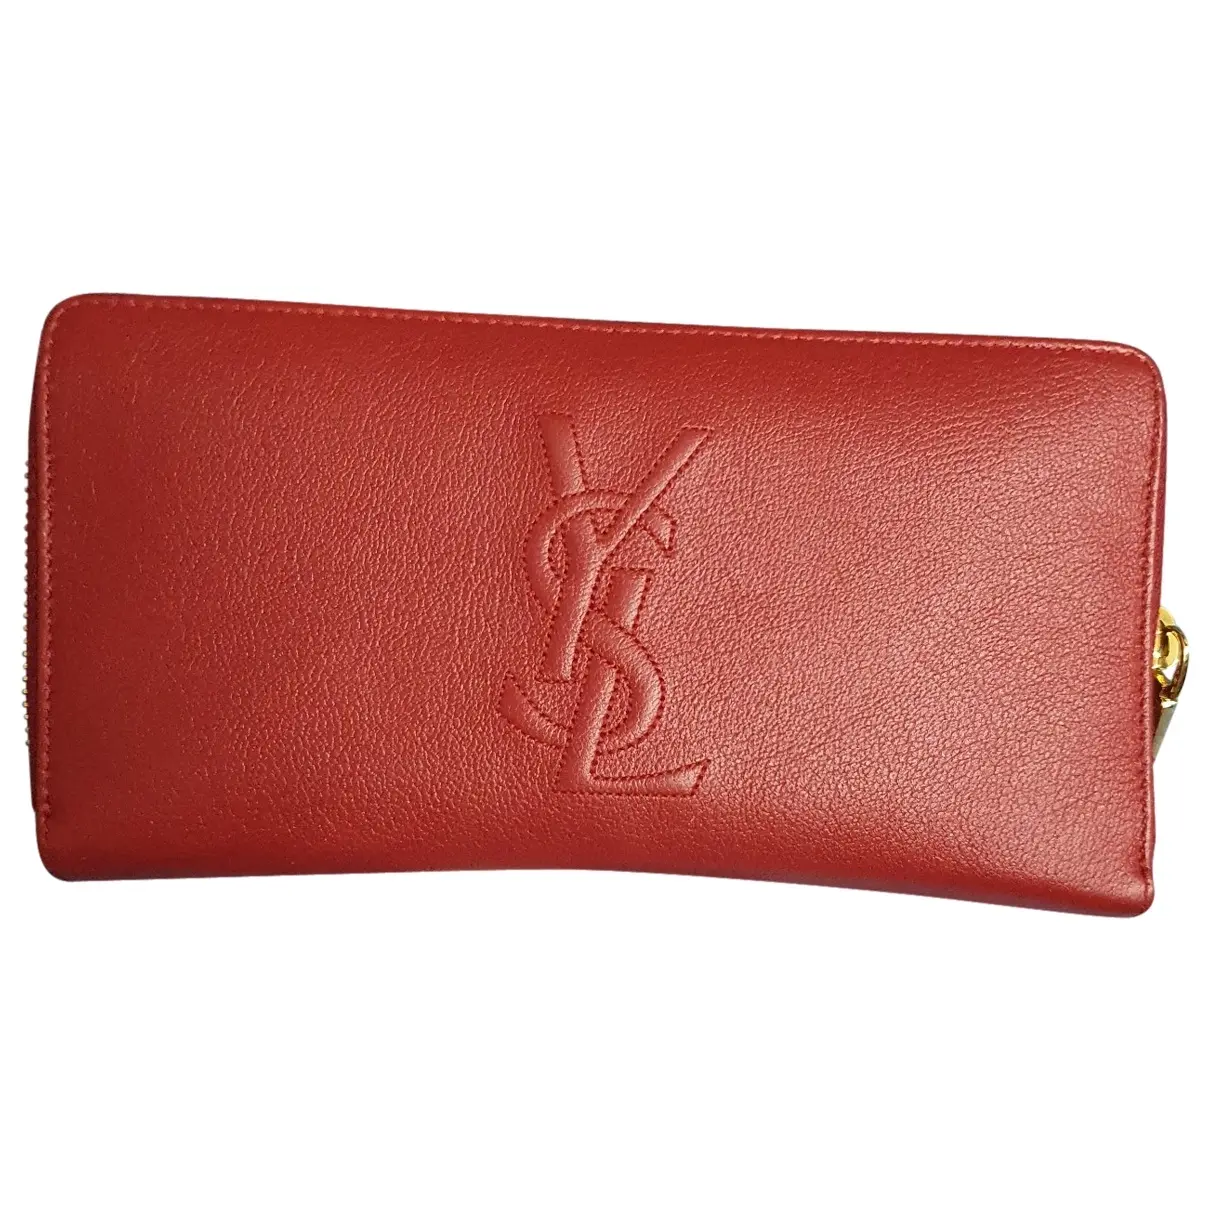 Belle de Jour leather wallet Yves Saint Laurent - Vintage